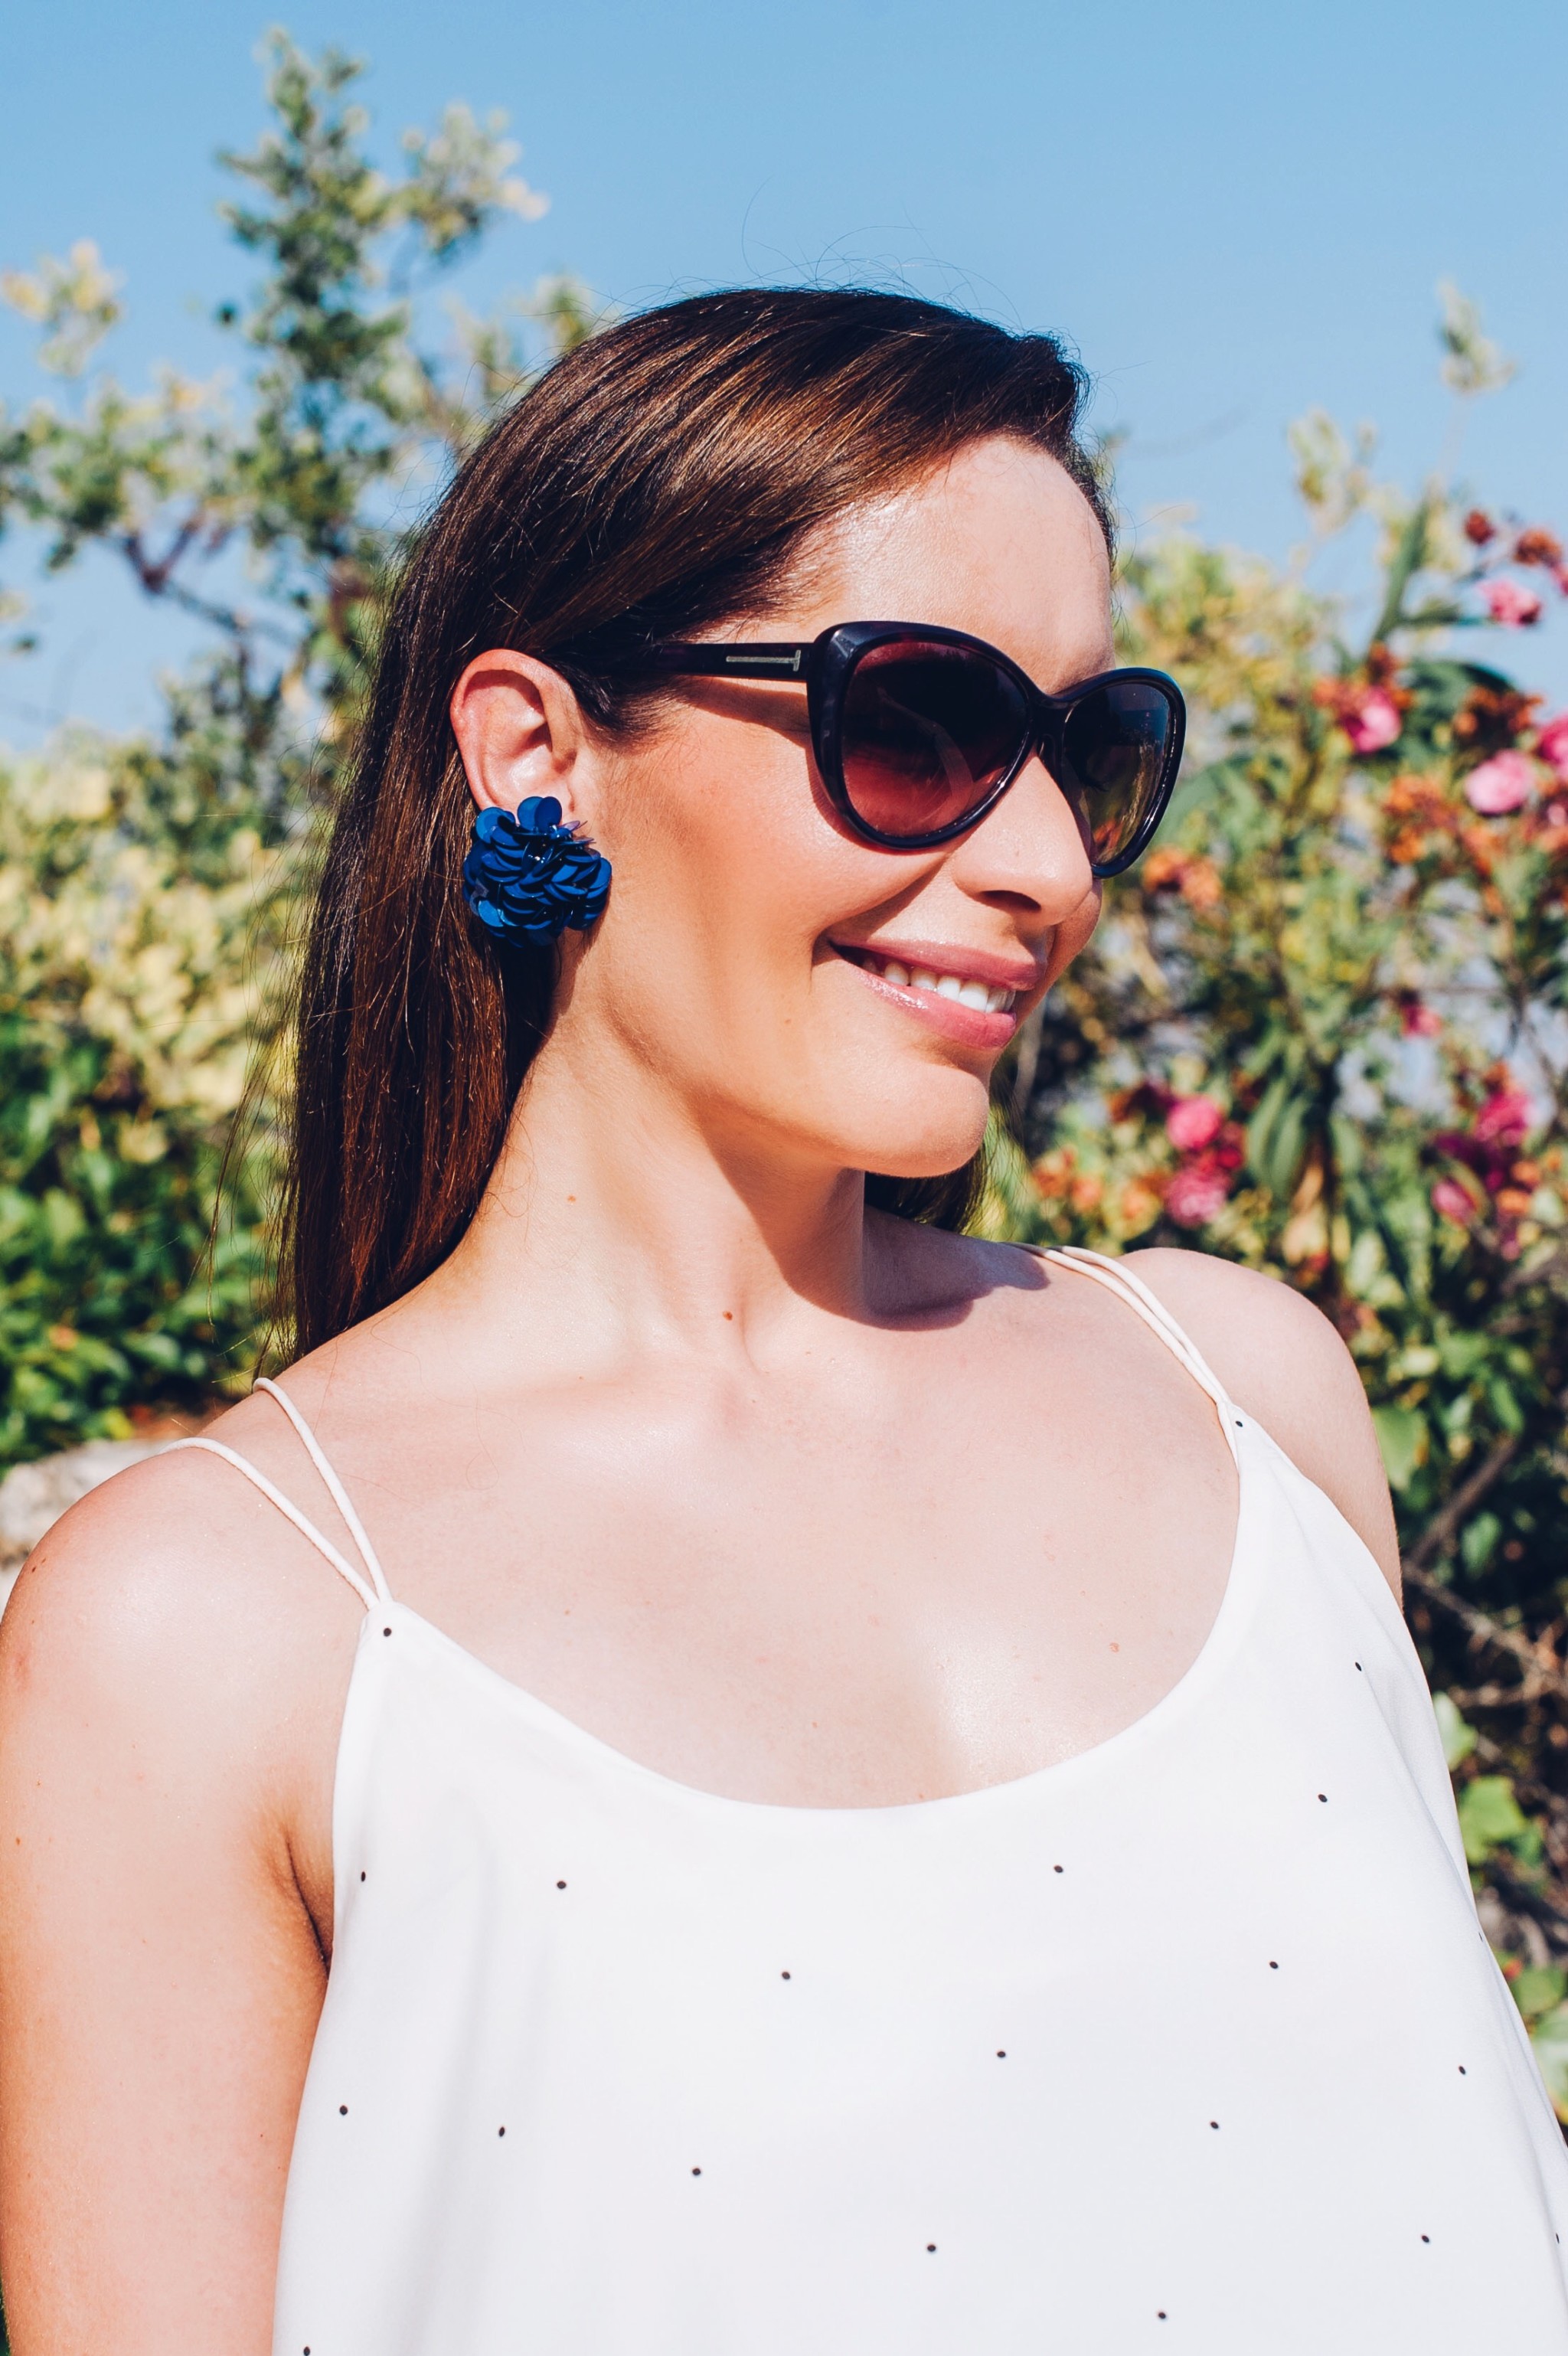 How to wear flower earrings 